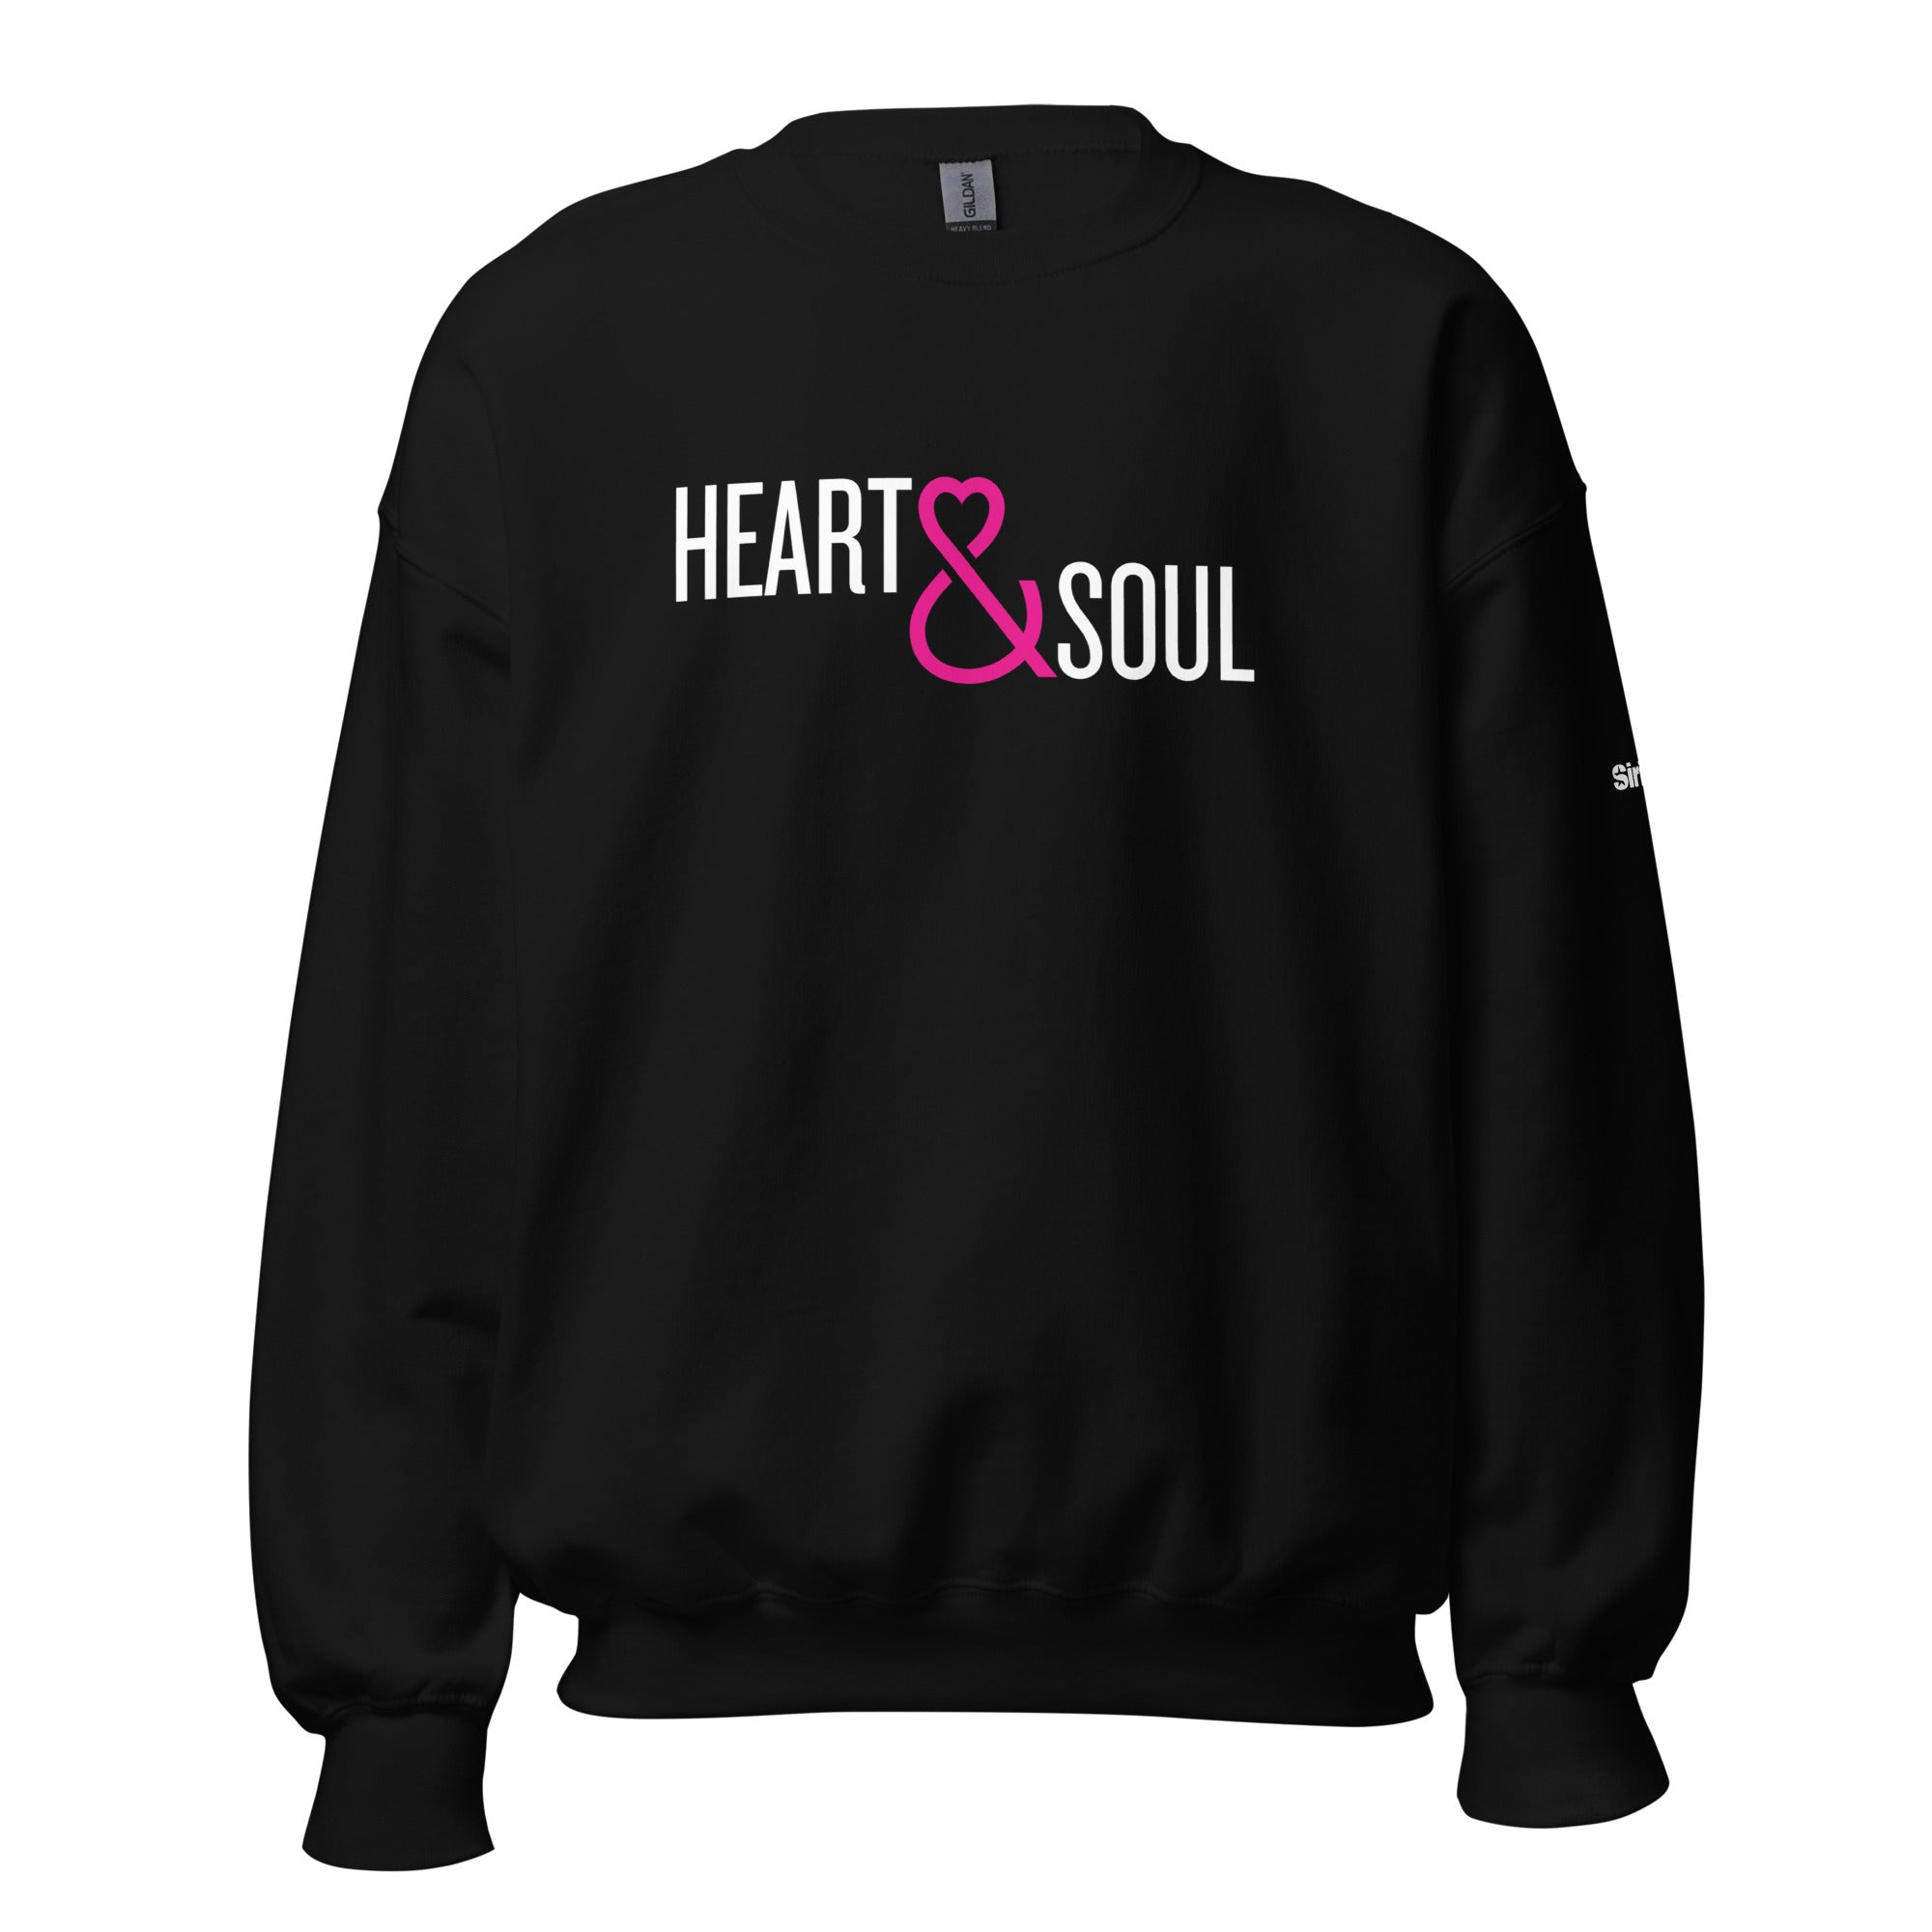 Heart & Soul: Sweatshirt (Black)